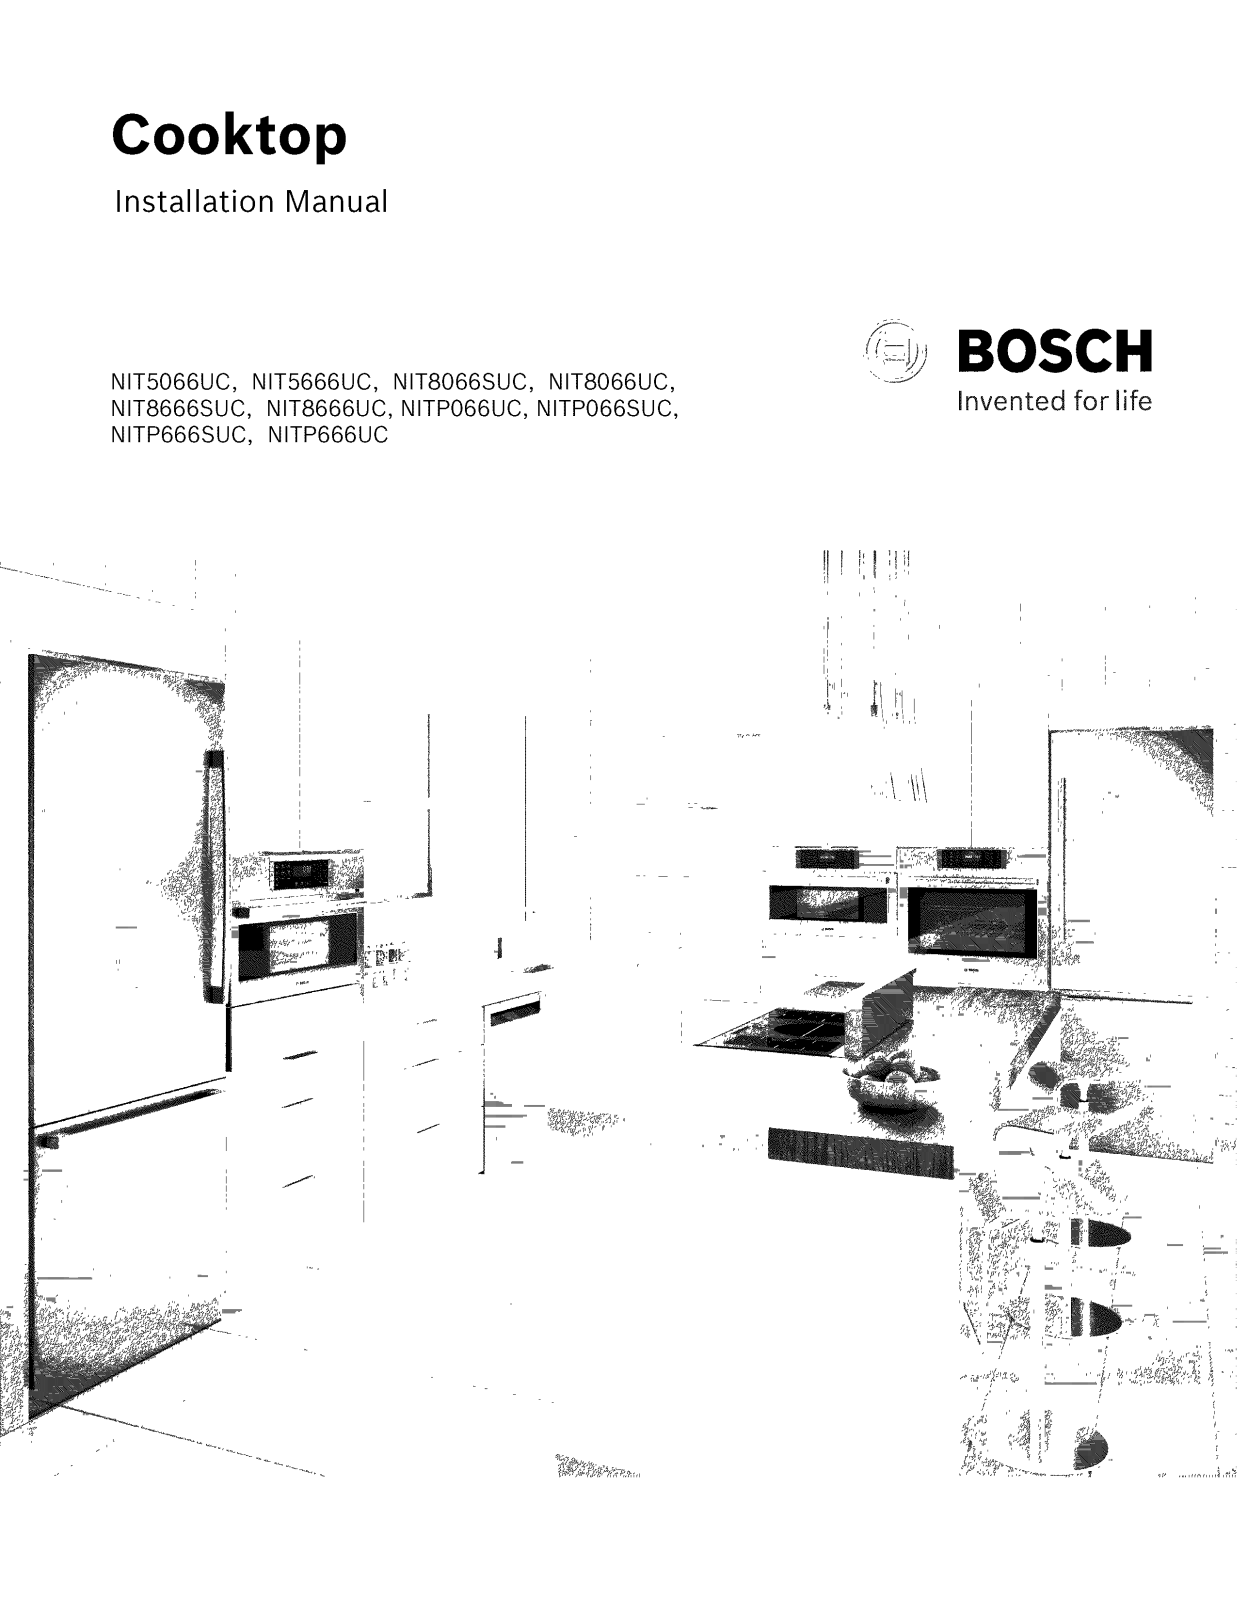 Bosch NITP666UC/01, NITP666SUC/01, NITP066UC/01, NIT8666UC/01, NIT8666SUC/01 Installation Guide